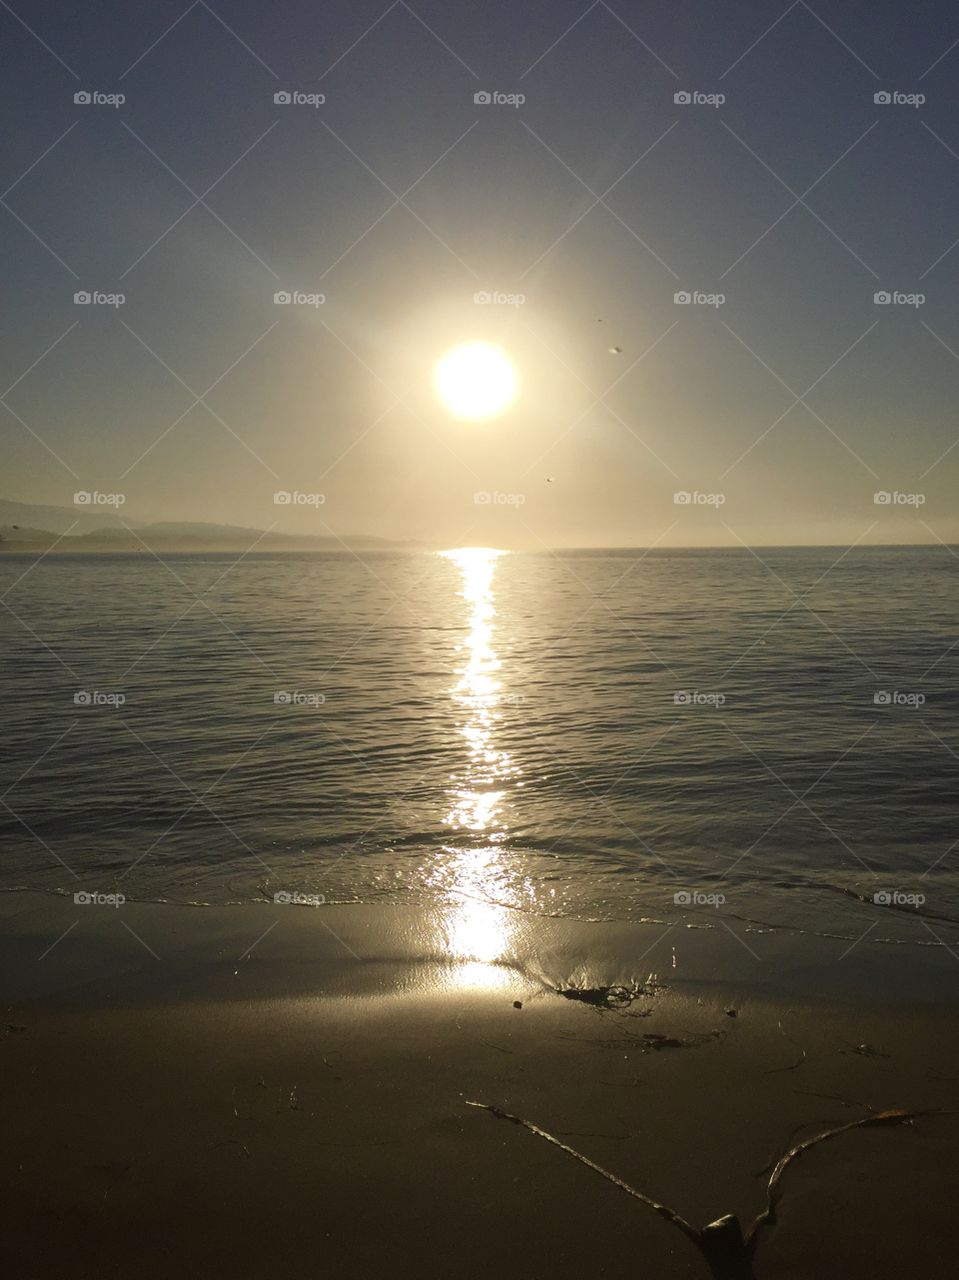 Sunrise at Santa Barbara. Bright sun, dark edges. Sun reflecting on water. 